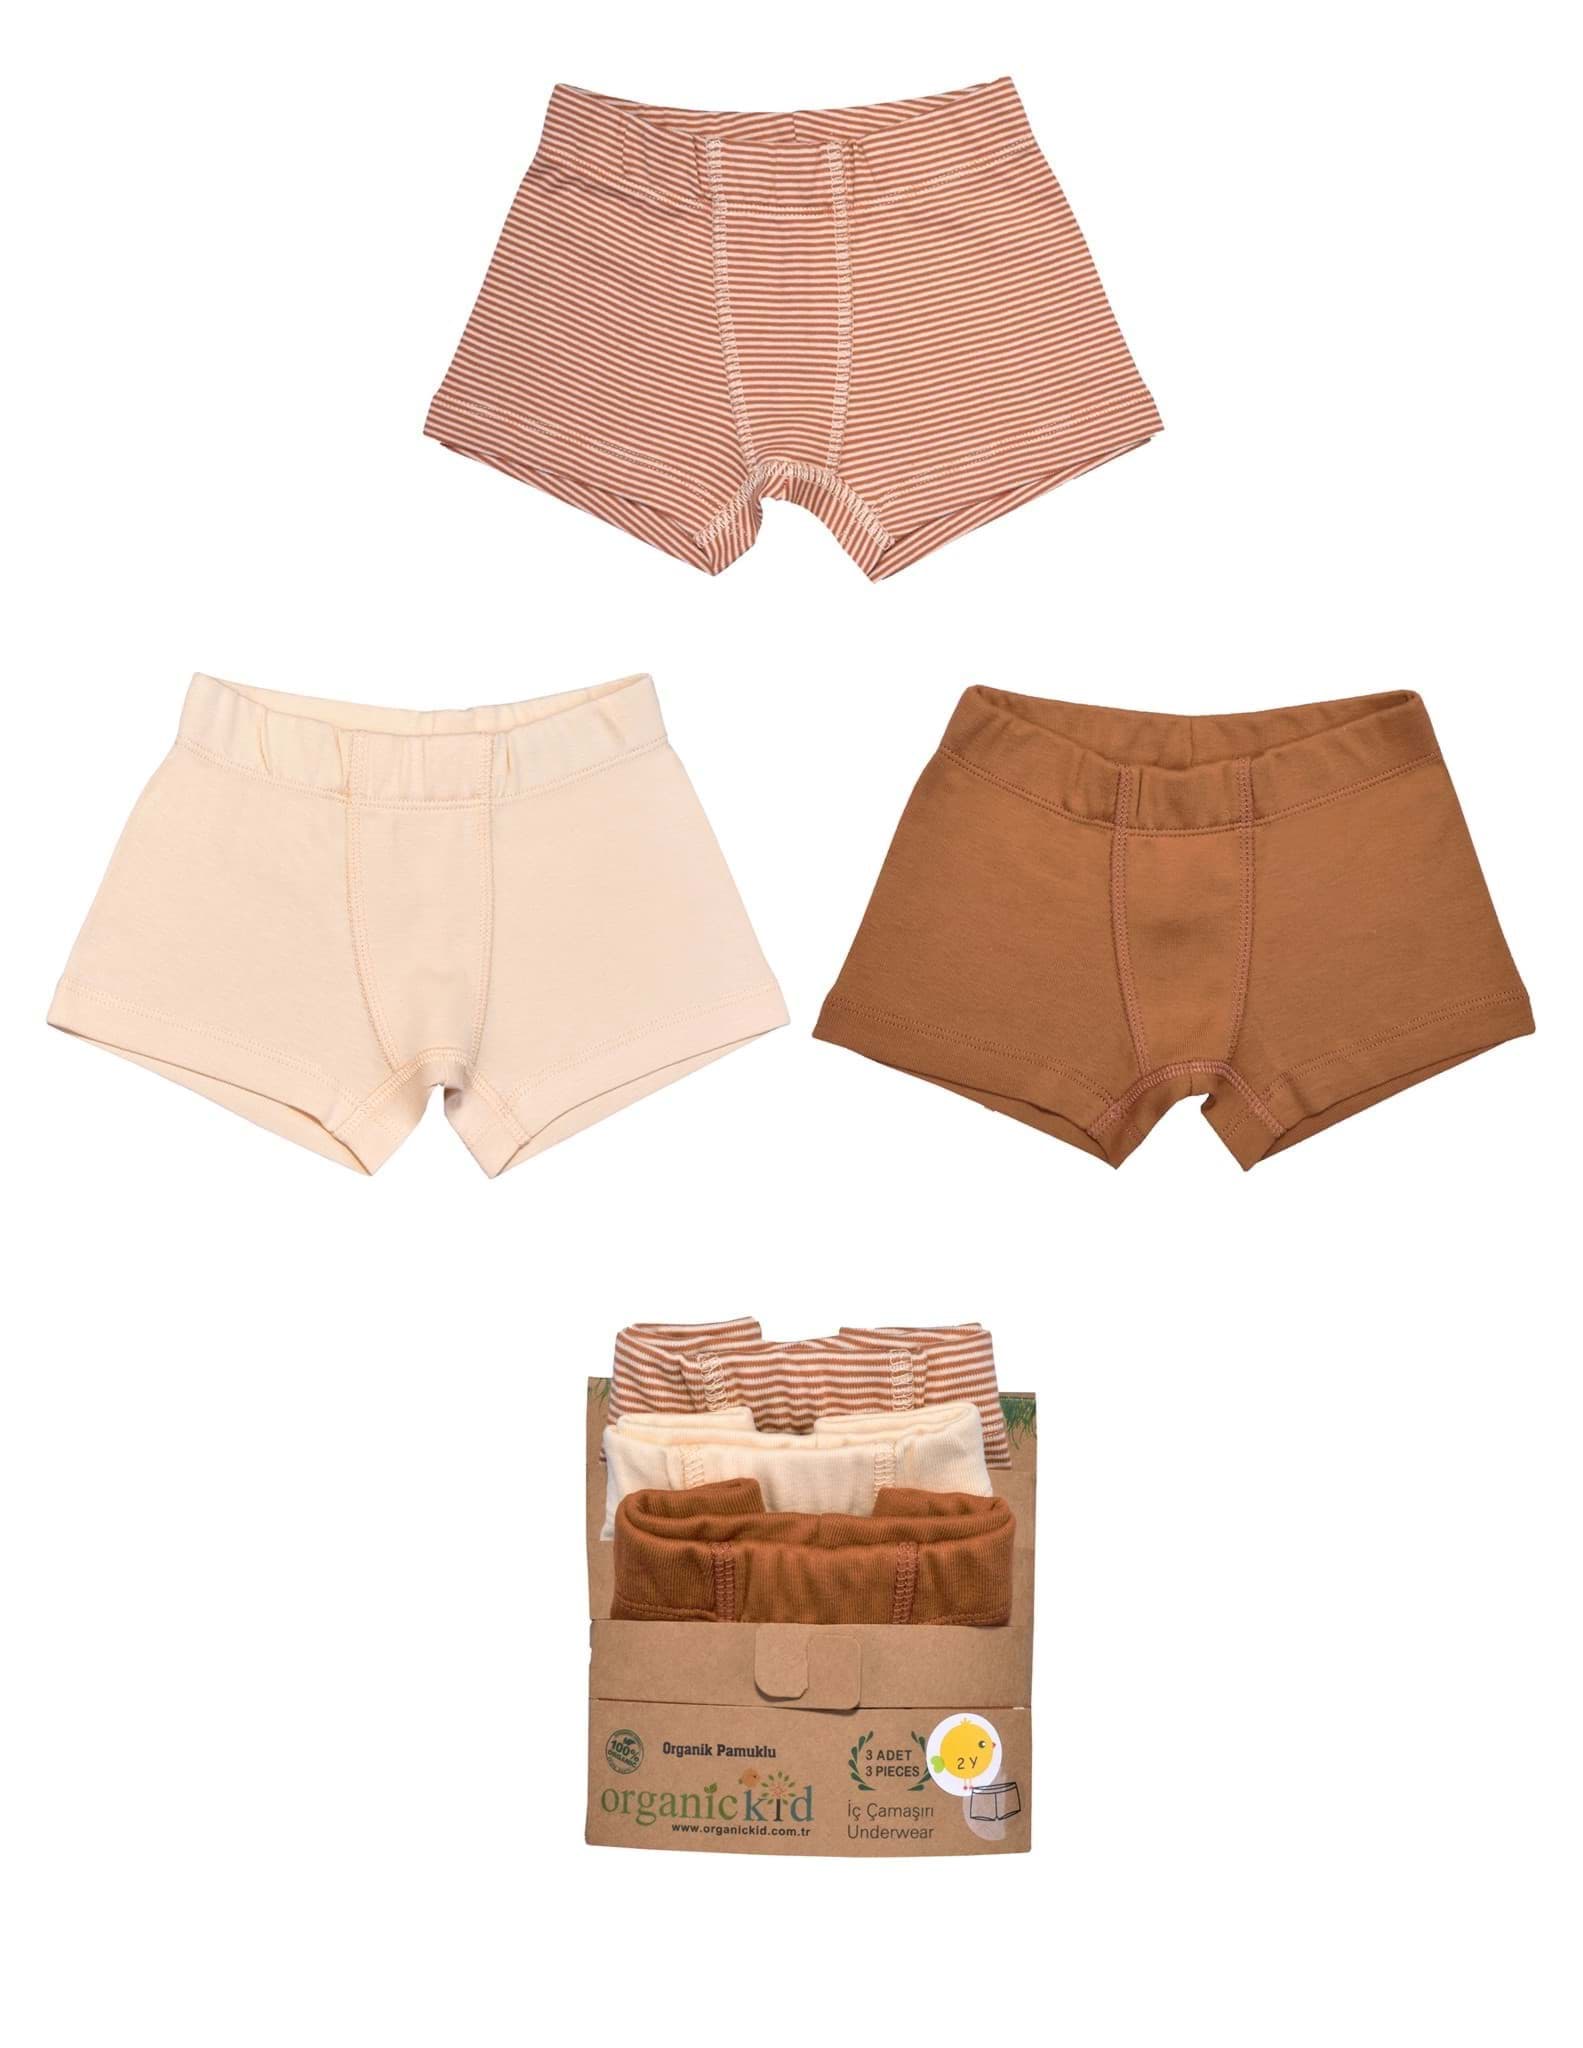 Cinnamon Erkek Çocuk İç Çamaşır Set 3lü resmi